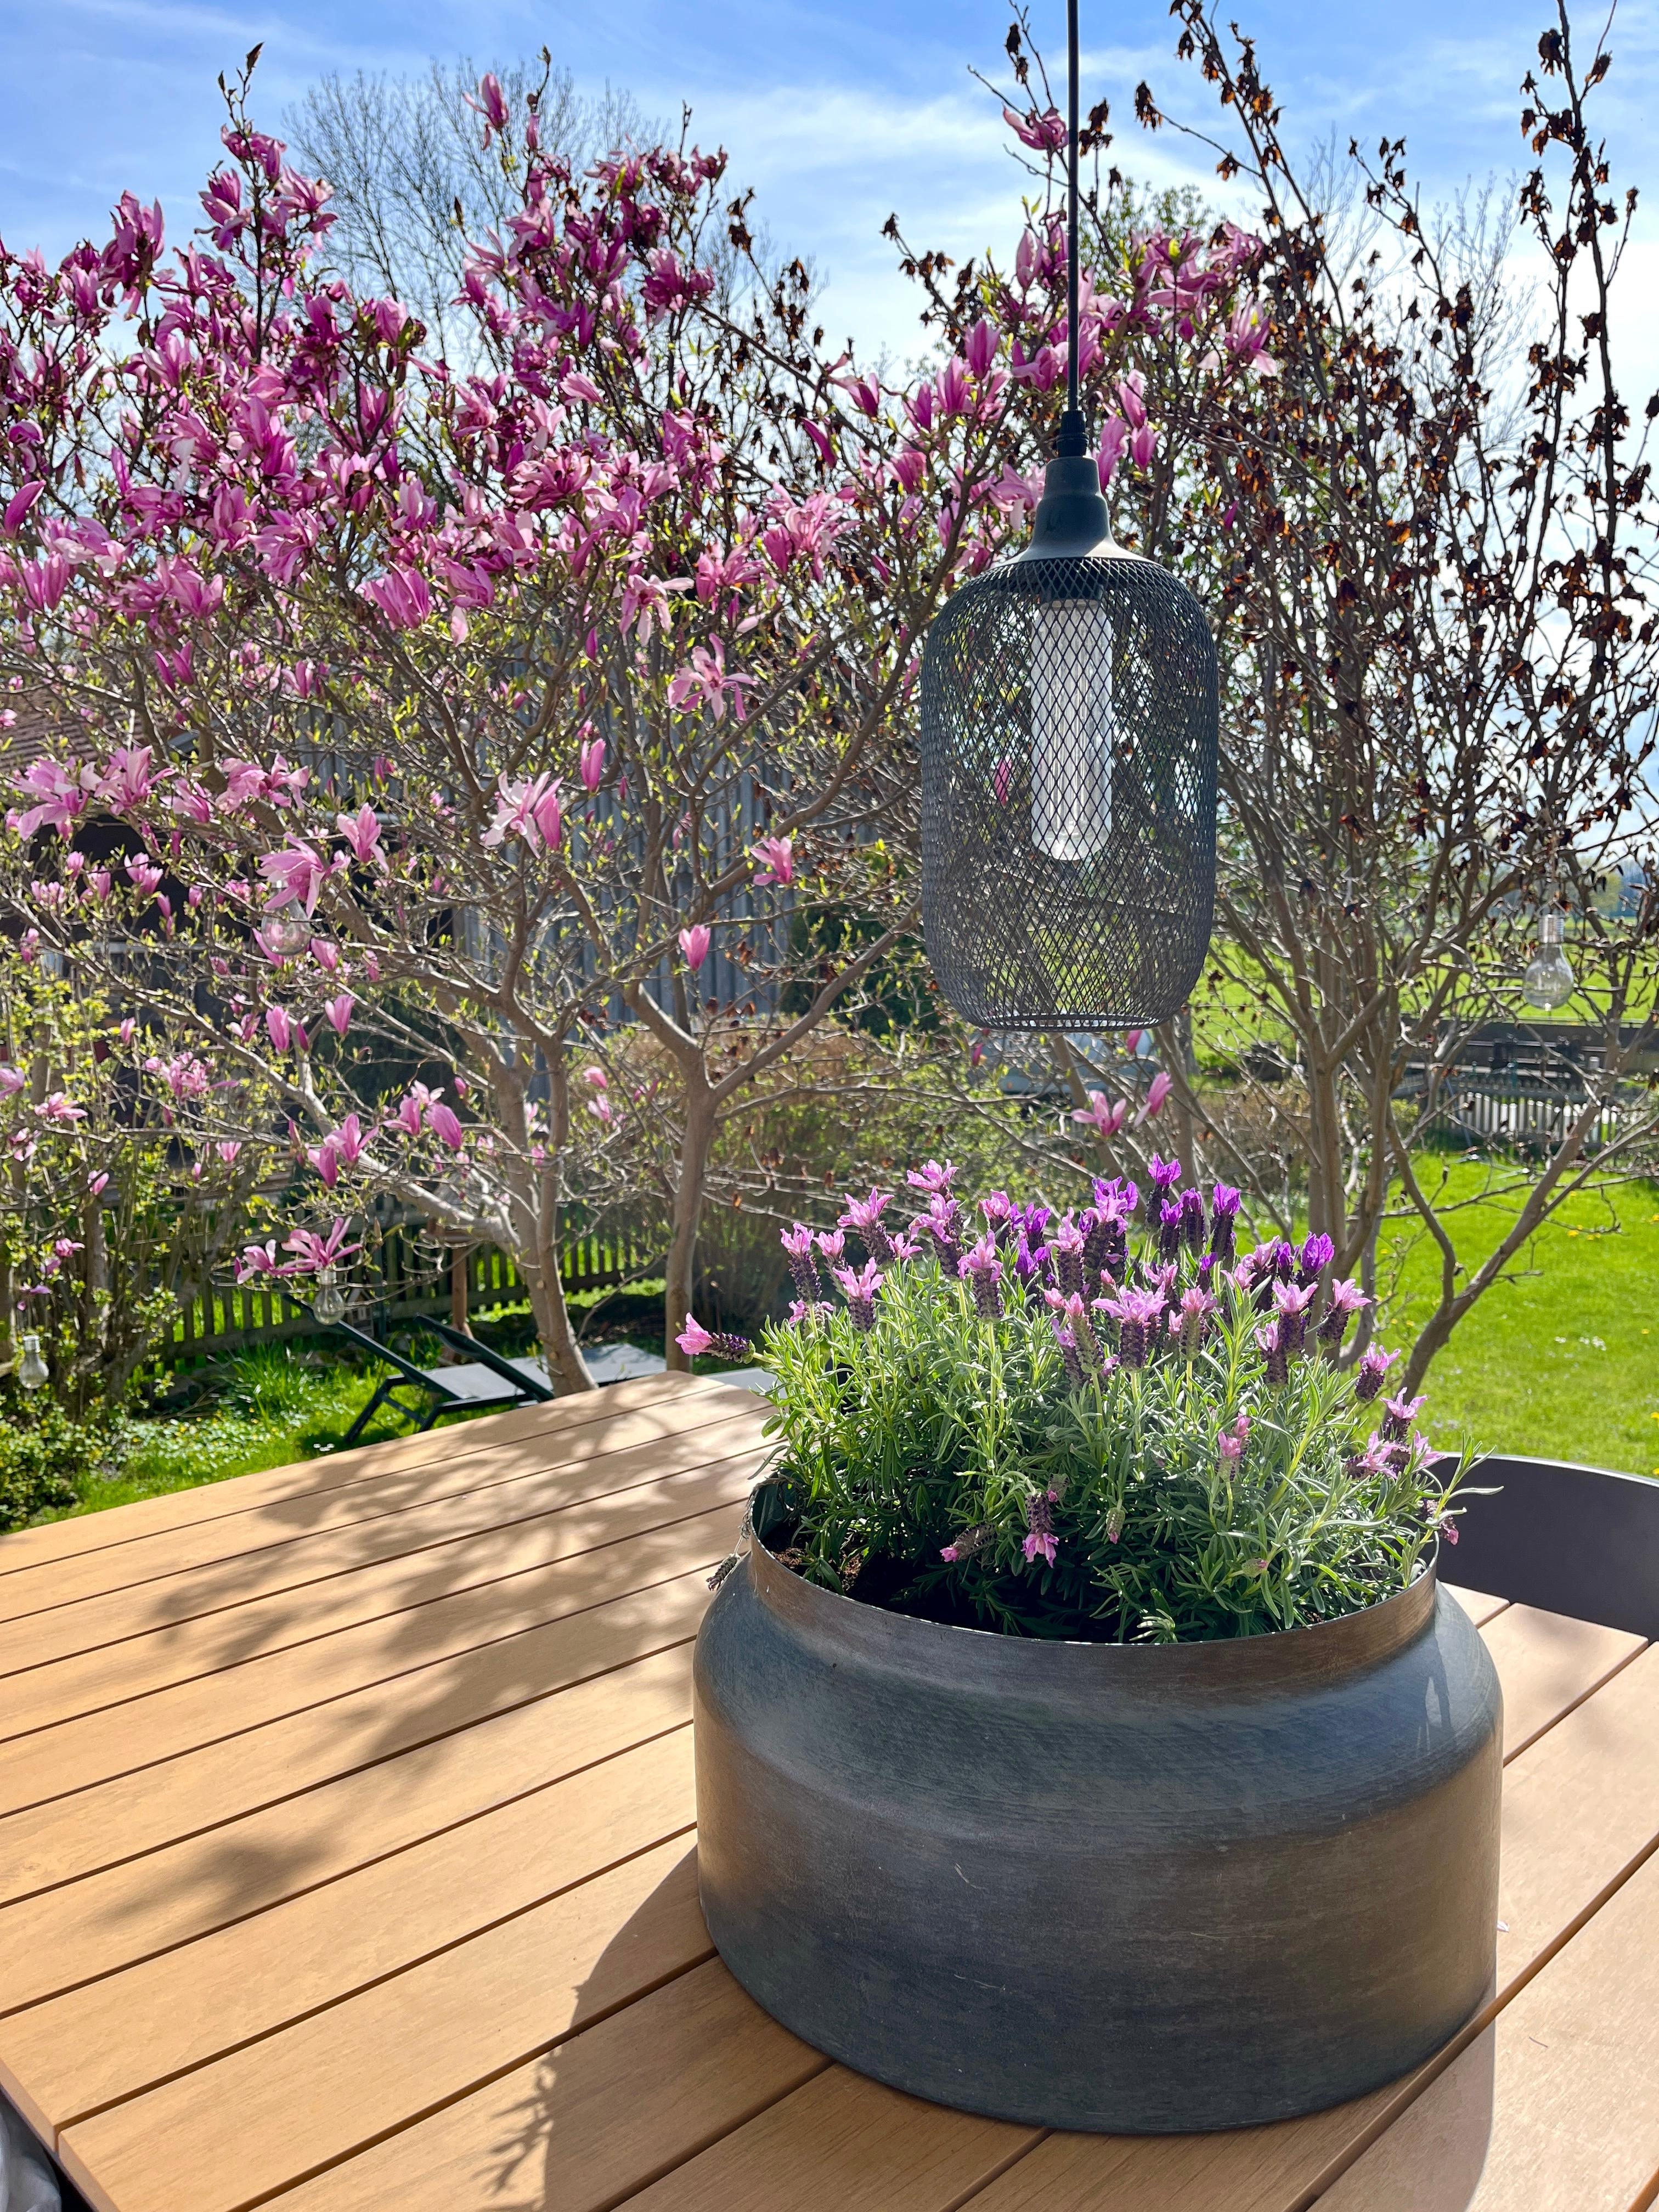 Hallo #Sonne ☀️
#terrasse#magnolie#lavendel#terrassenrenovierung#outdoorliving#terrassendesign#gartenzeit#frühling